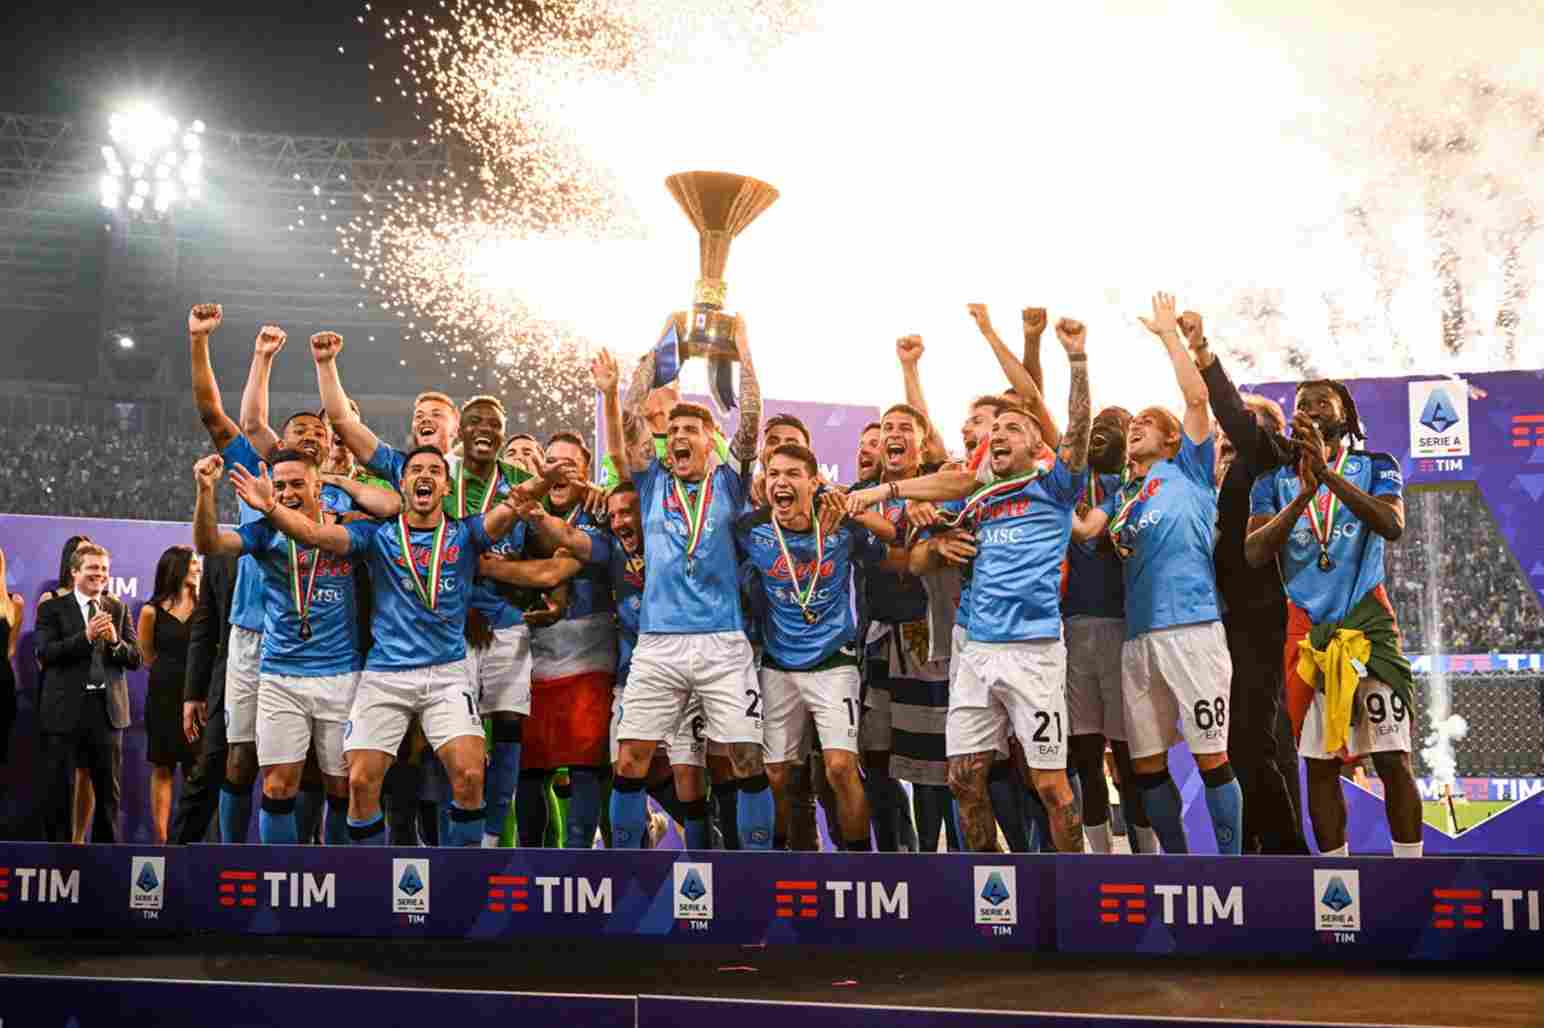  Italian-Serie-A è la massima divisione del calcio italiano, composta da 20 squadre. È considerata una delle leghe più competitive e prestigiose al mondo, con squadre come Juventus, Milan, Inter e Roma che hanno una lunga storia di successi. La stagione si svolge da agosto a maggio, con ogni squadra che gioca 38 partite. La squadra che ottiene il maggior numero di punti 